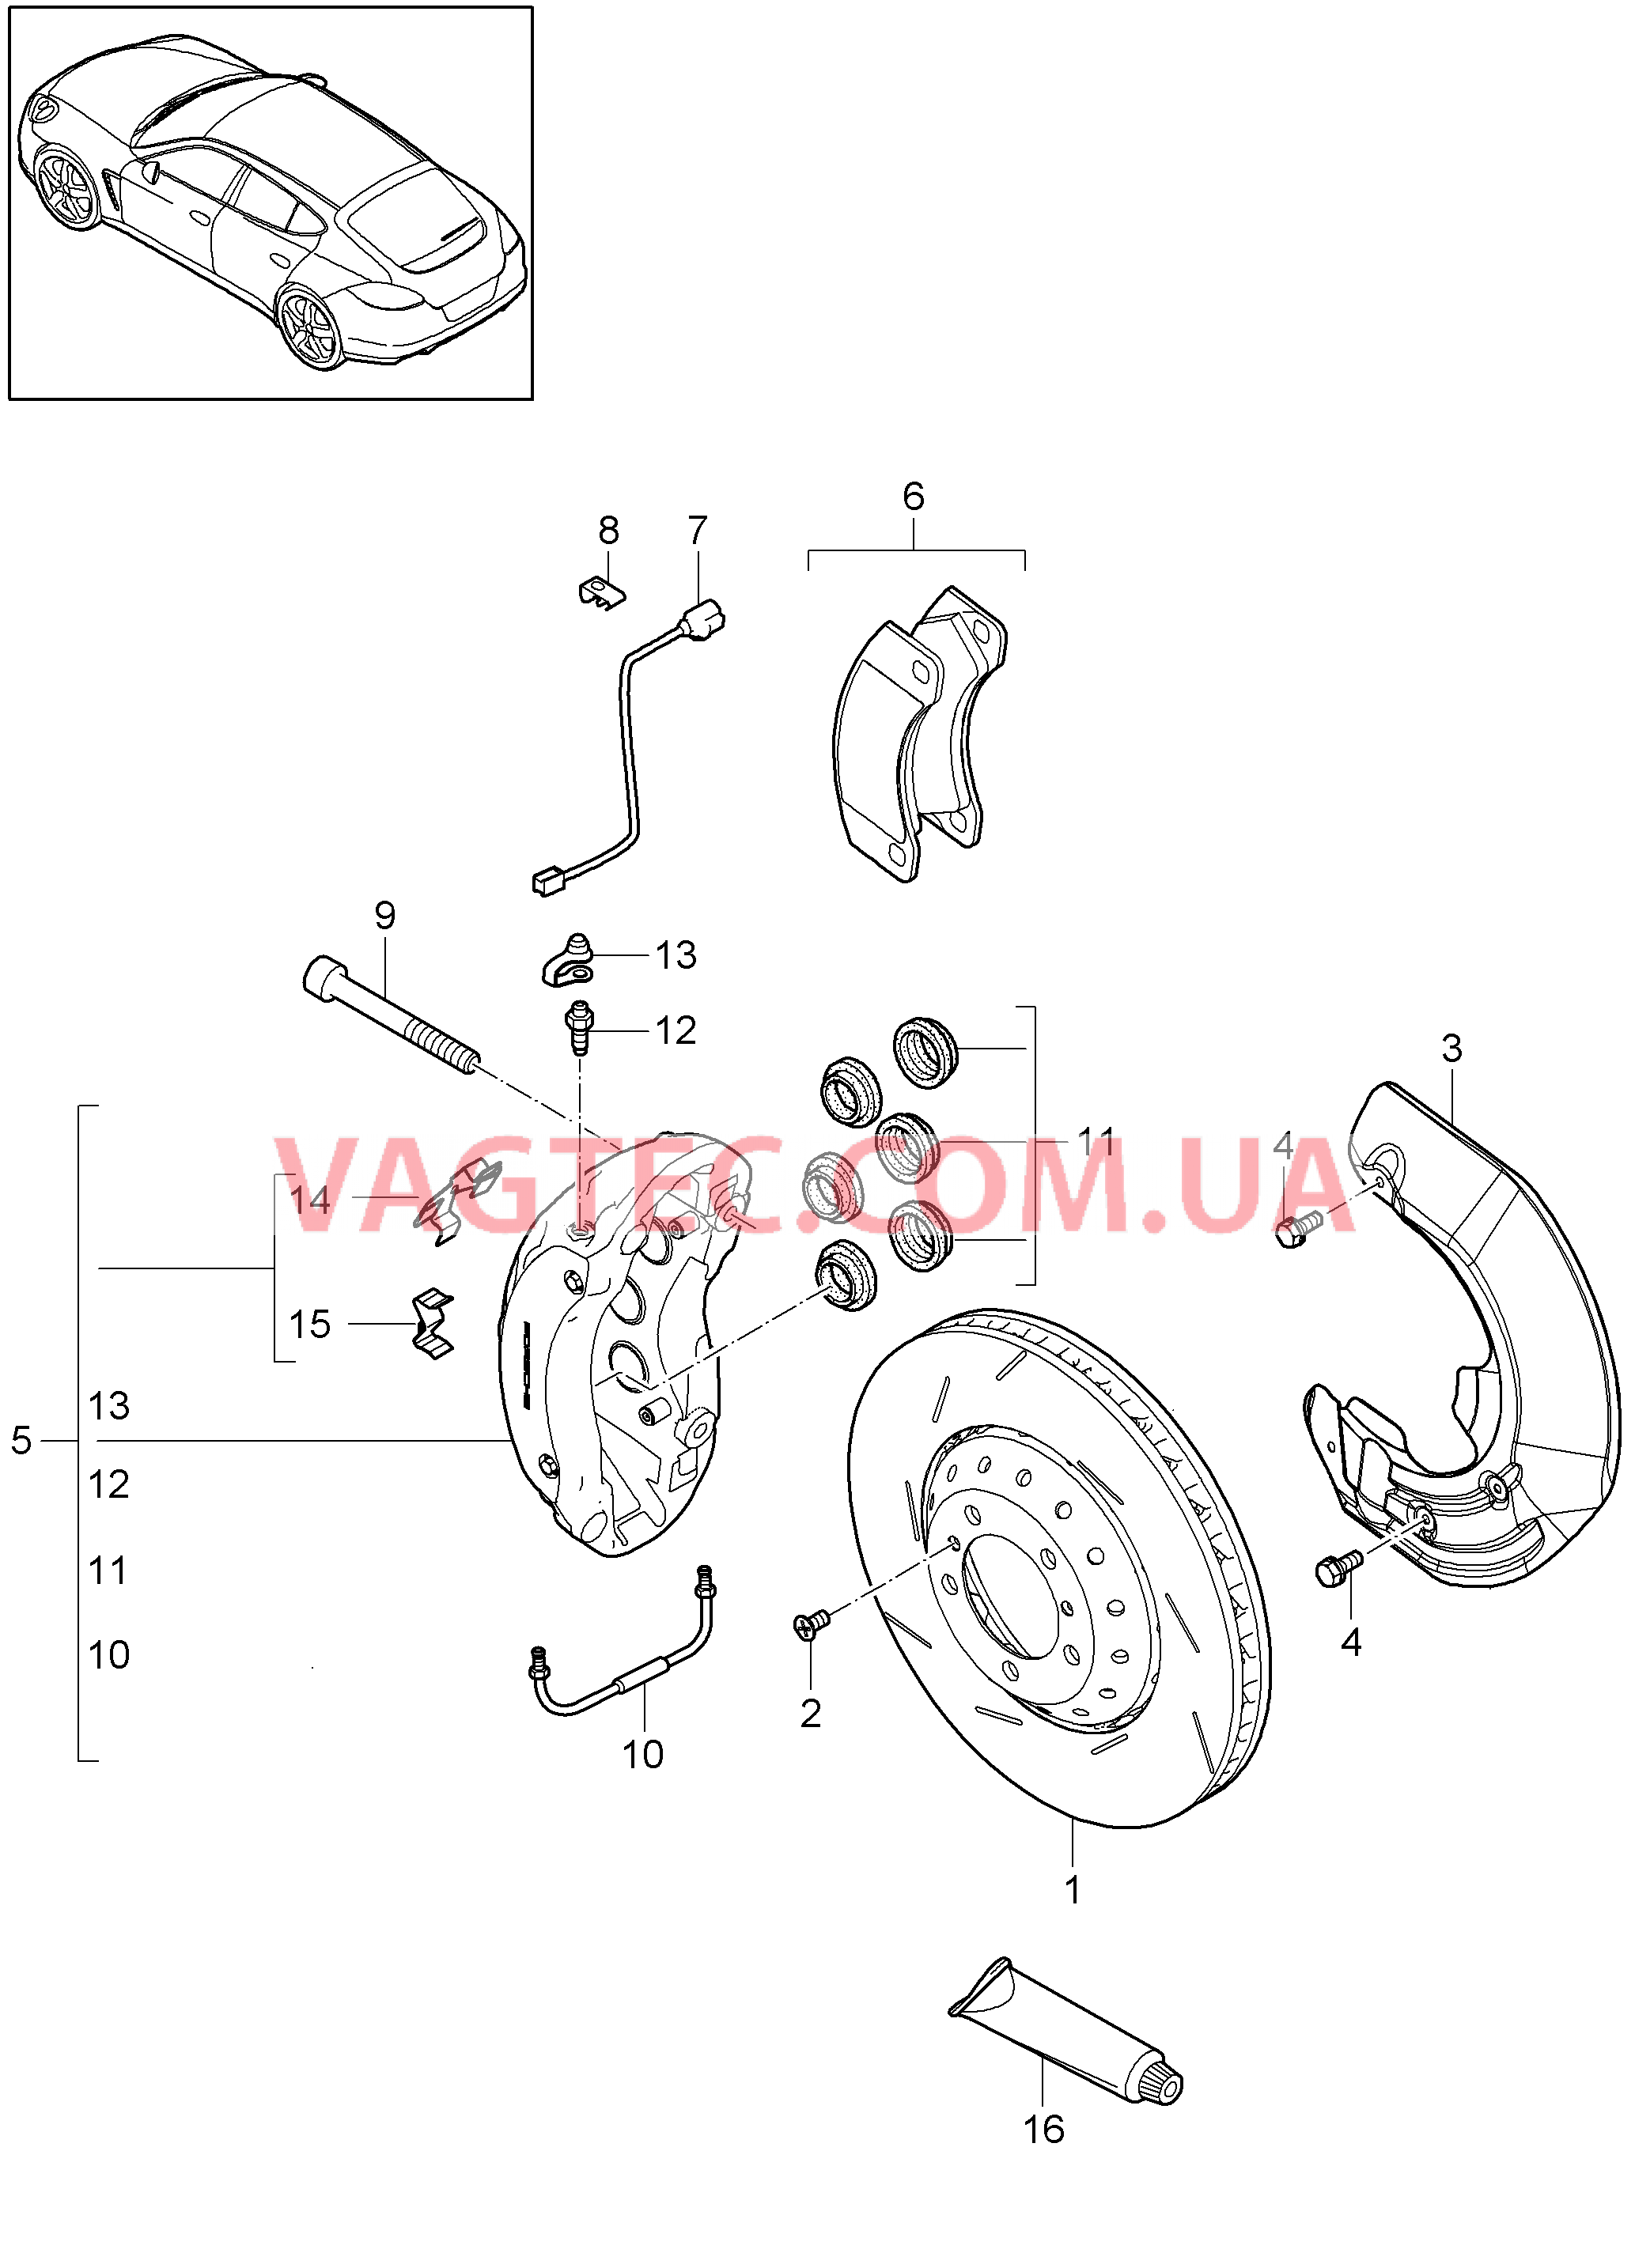 602-005 Дисковой тормоз, Передняя ось
						
						TURBO, M48.70, TURBO S для PORSCHE Panamera 2010-2016